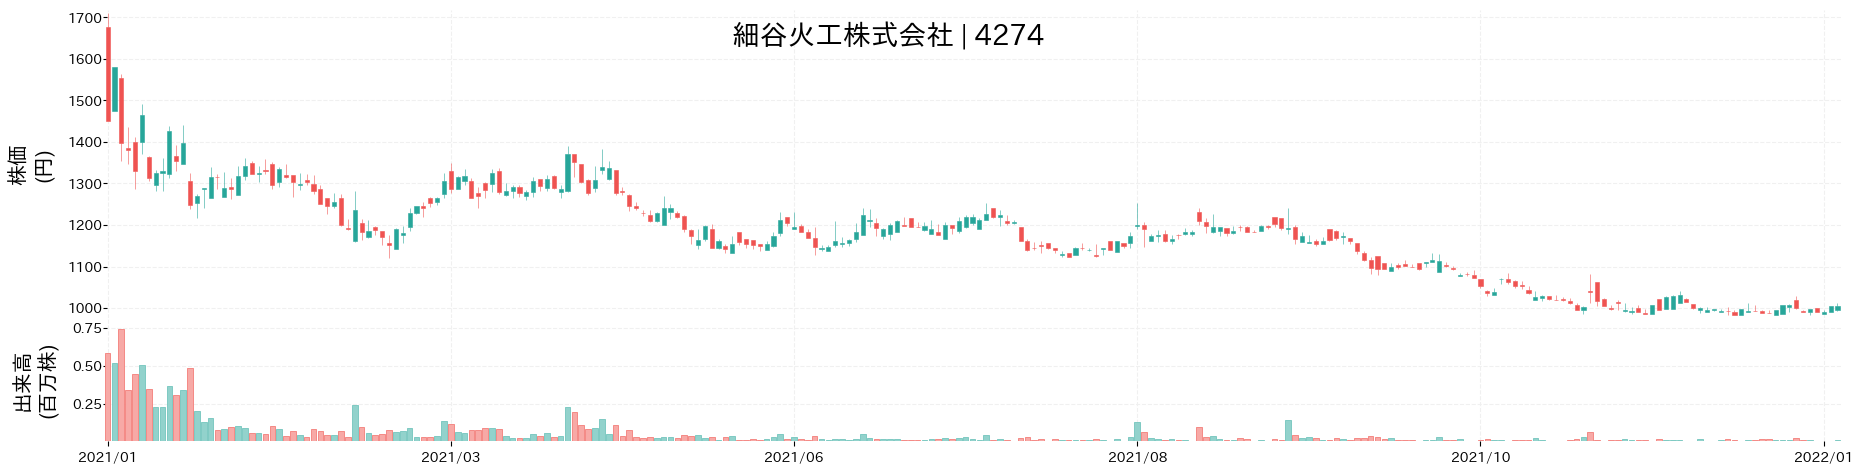 細谷火工の株価推移(2021)